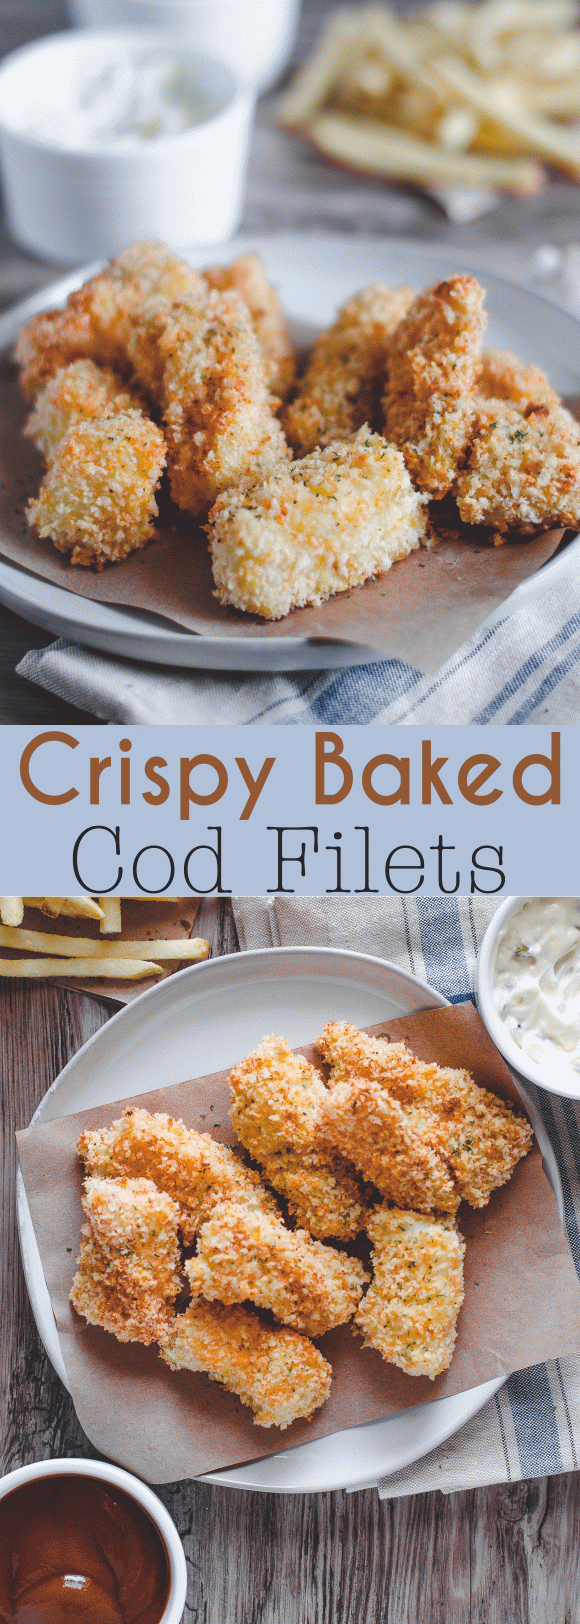 Crispy Baked Cod Filets